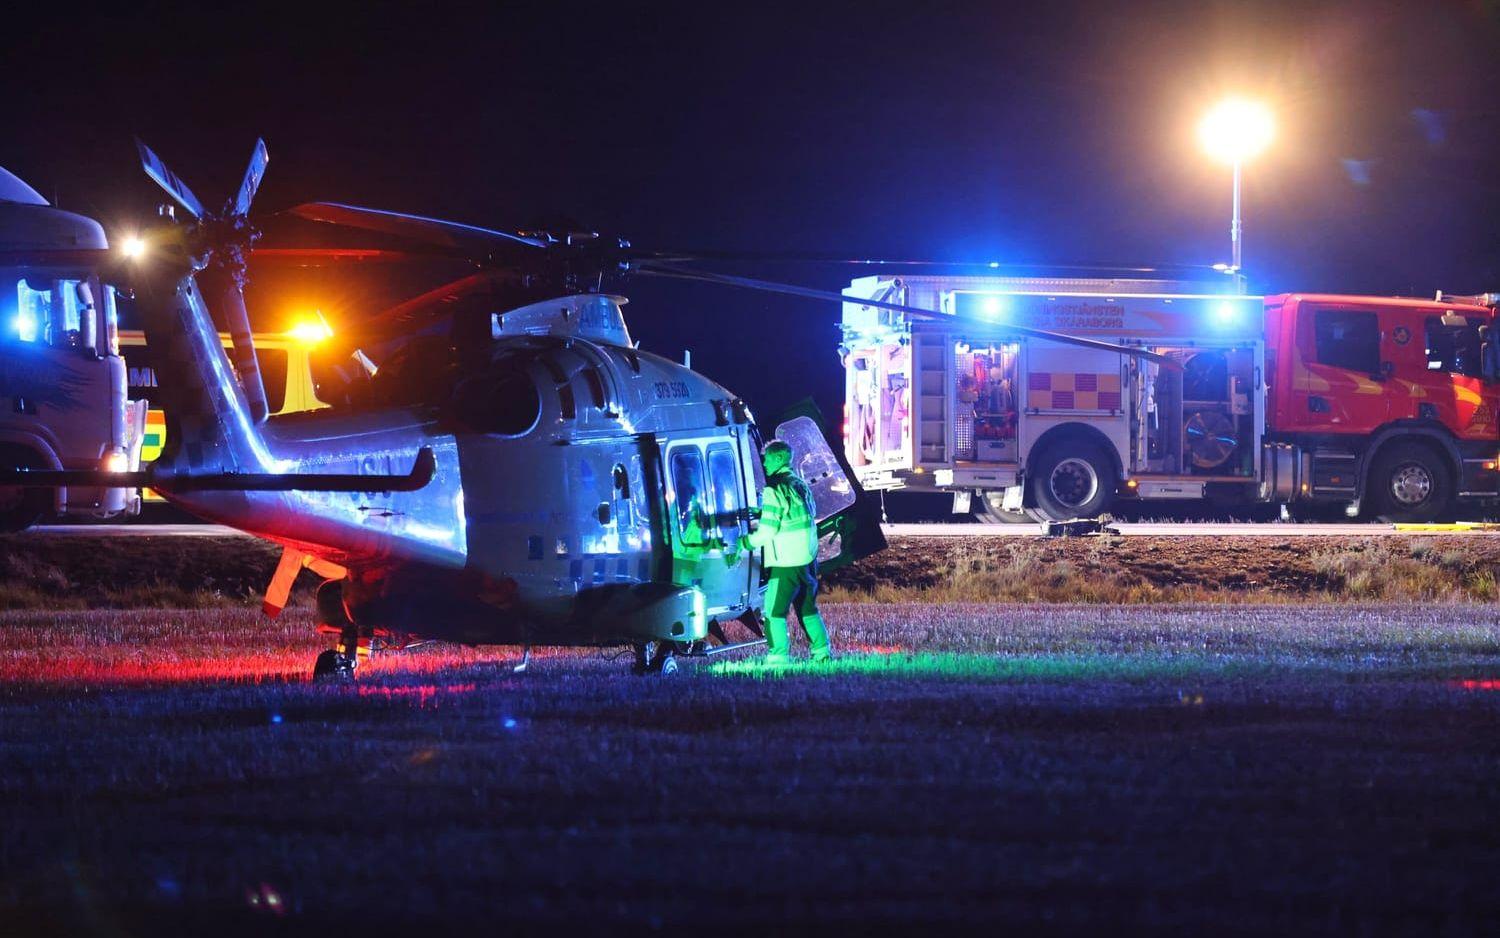 Ambulanshelikoptern larmades i slutet av september till en olycka mellan en lastbil och A-traktor, som inträffade på riksväg 44 mellan Lidköping och Trollhättan. Två ungdomar som färdades i A-traktorn dog.